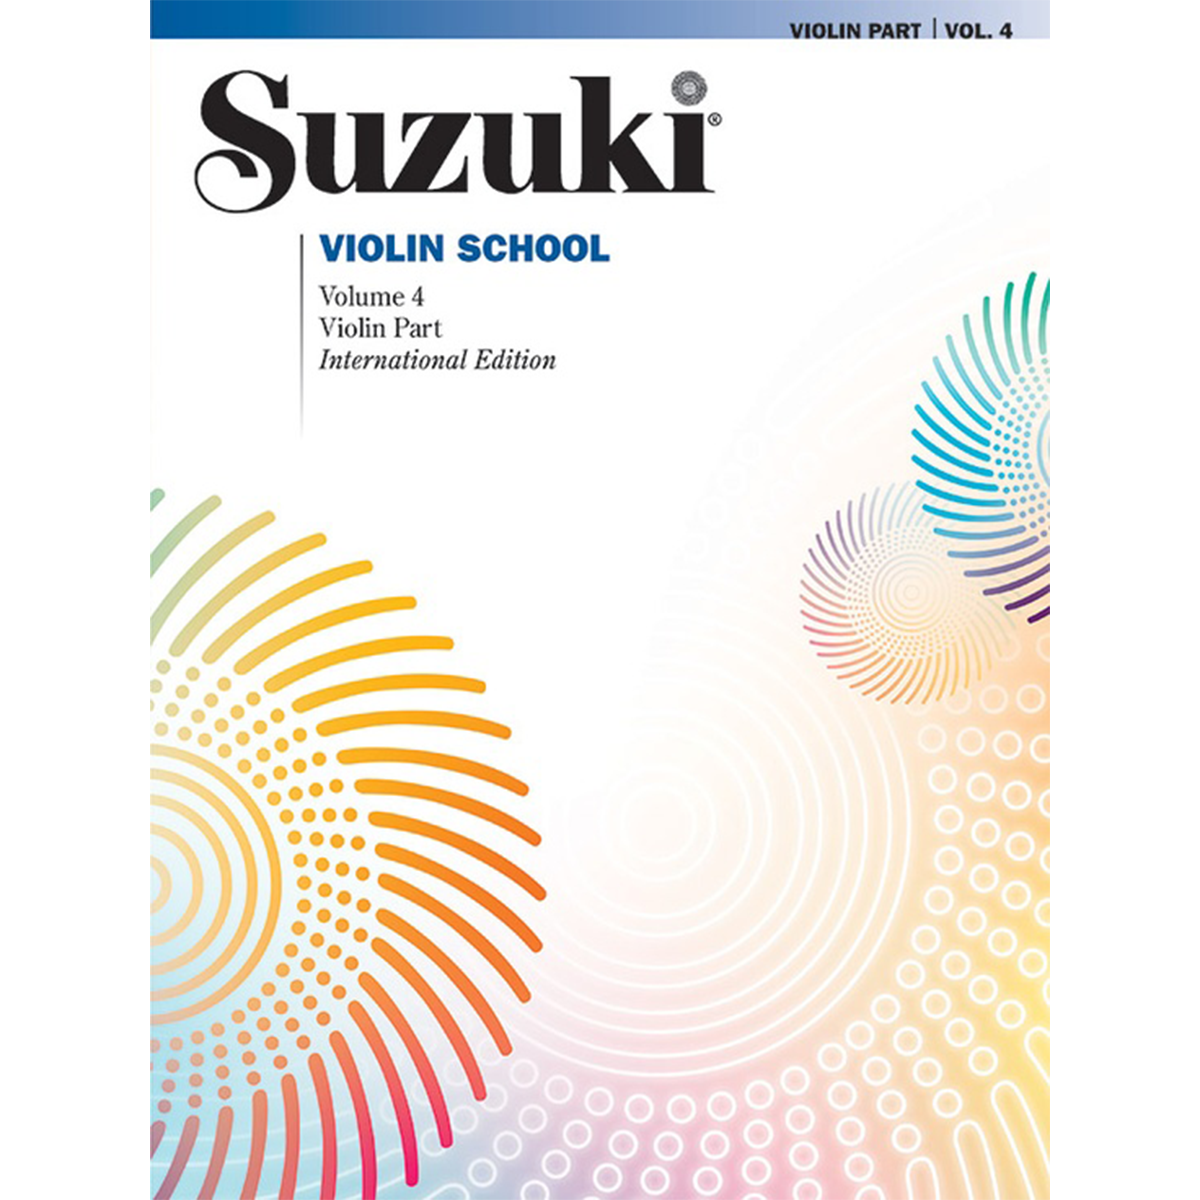 Suzuki Violin School: Violin Part, Vol. 4 in action